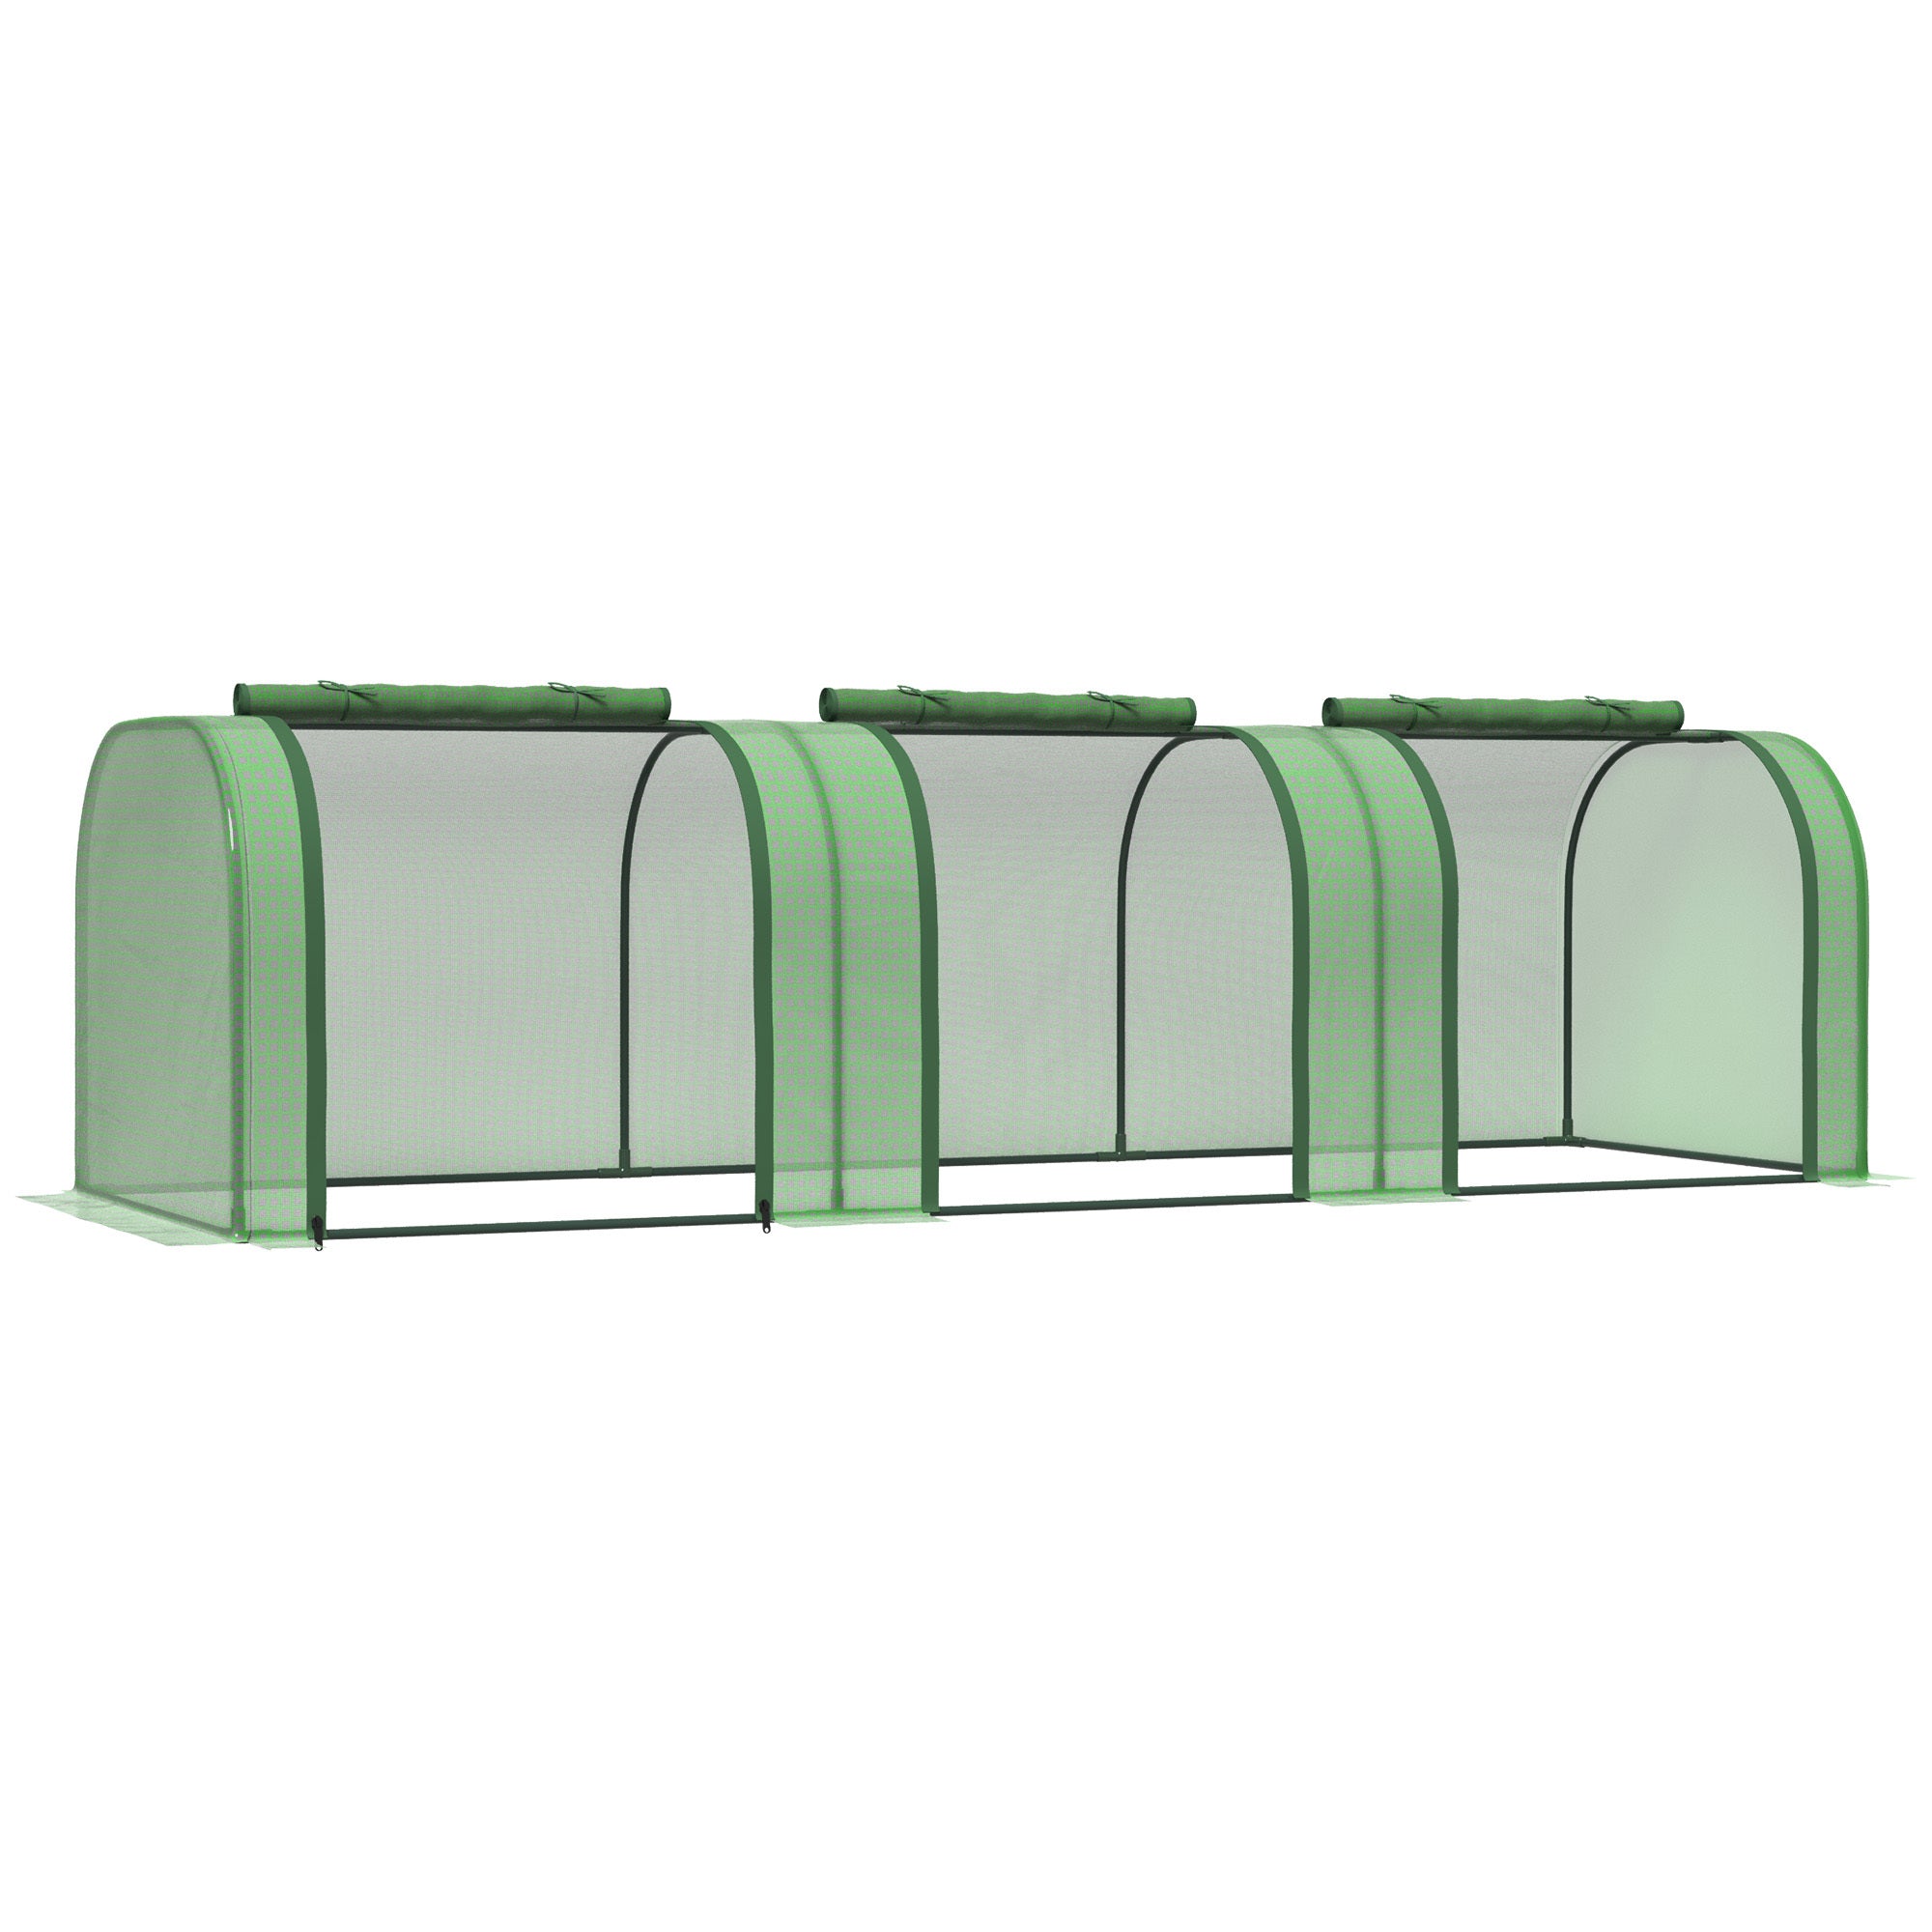 10' x 3' x 2.5' Mini Greenhouse, Portable Tunnel